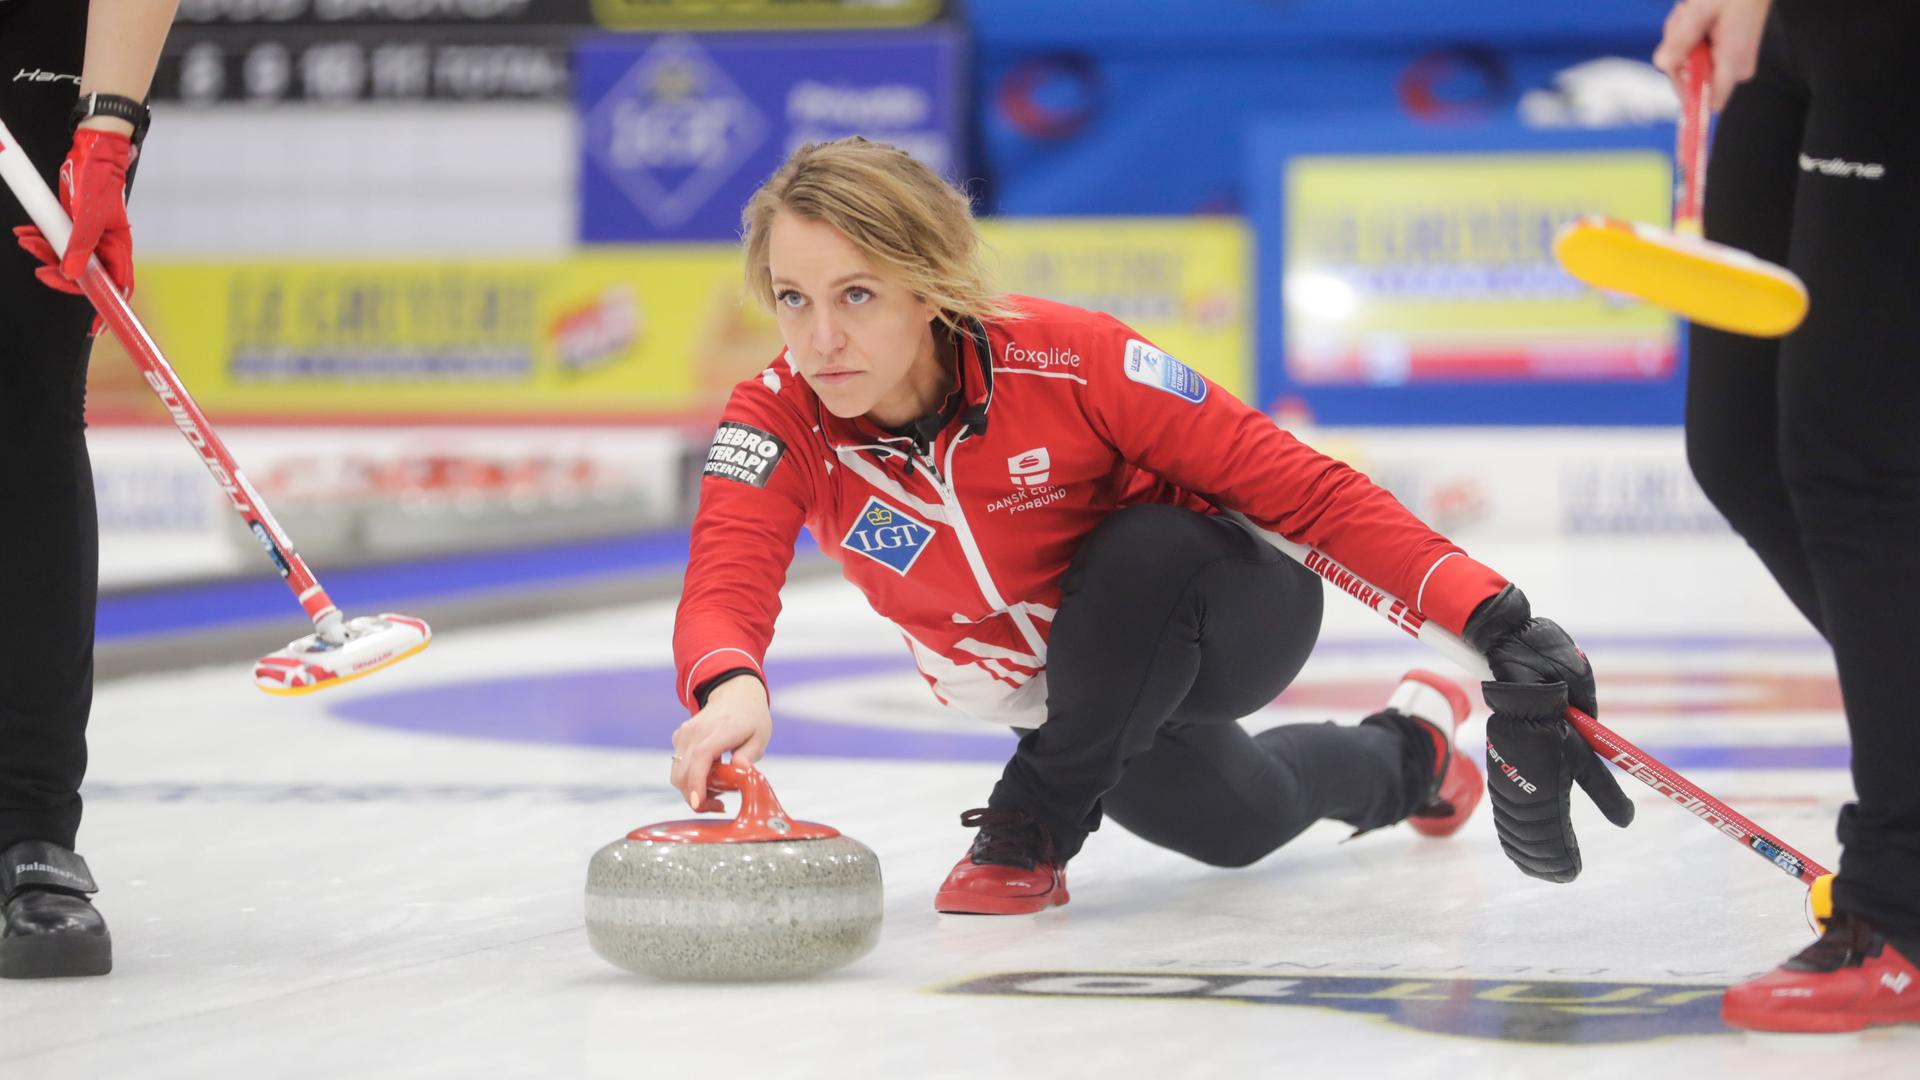 Curling - Däninnen gewinnen zum zweiten Mal EM-Titel